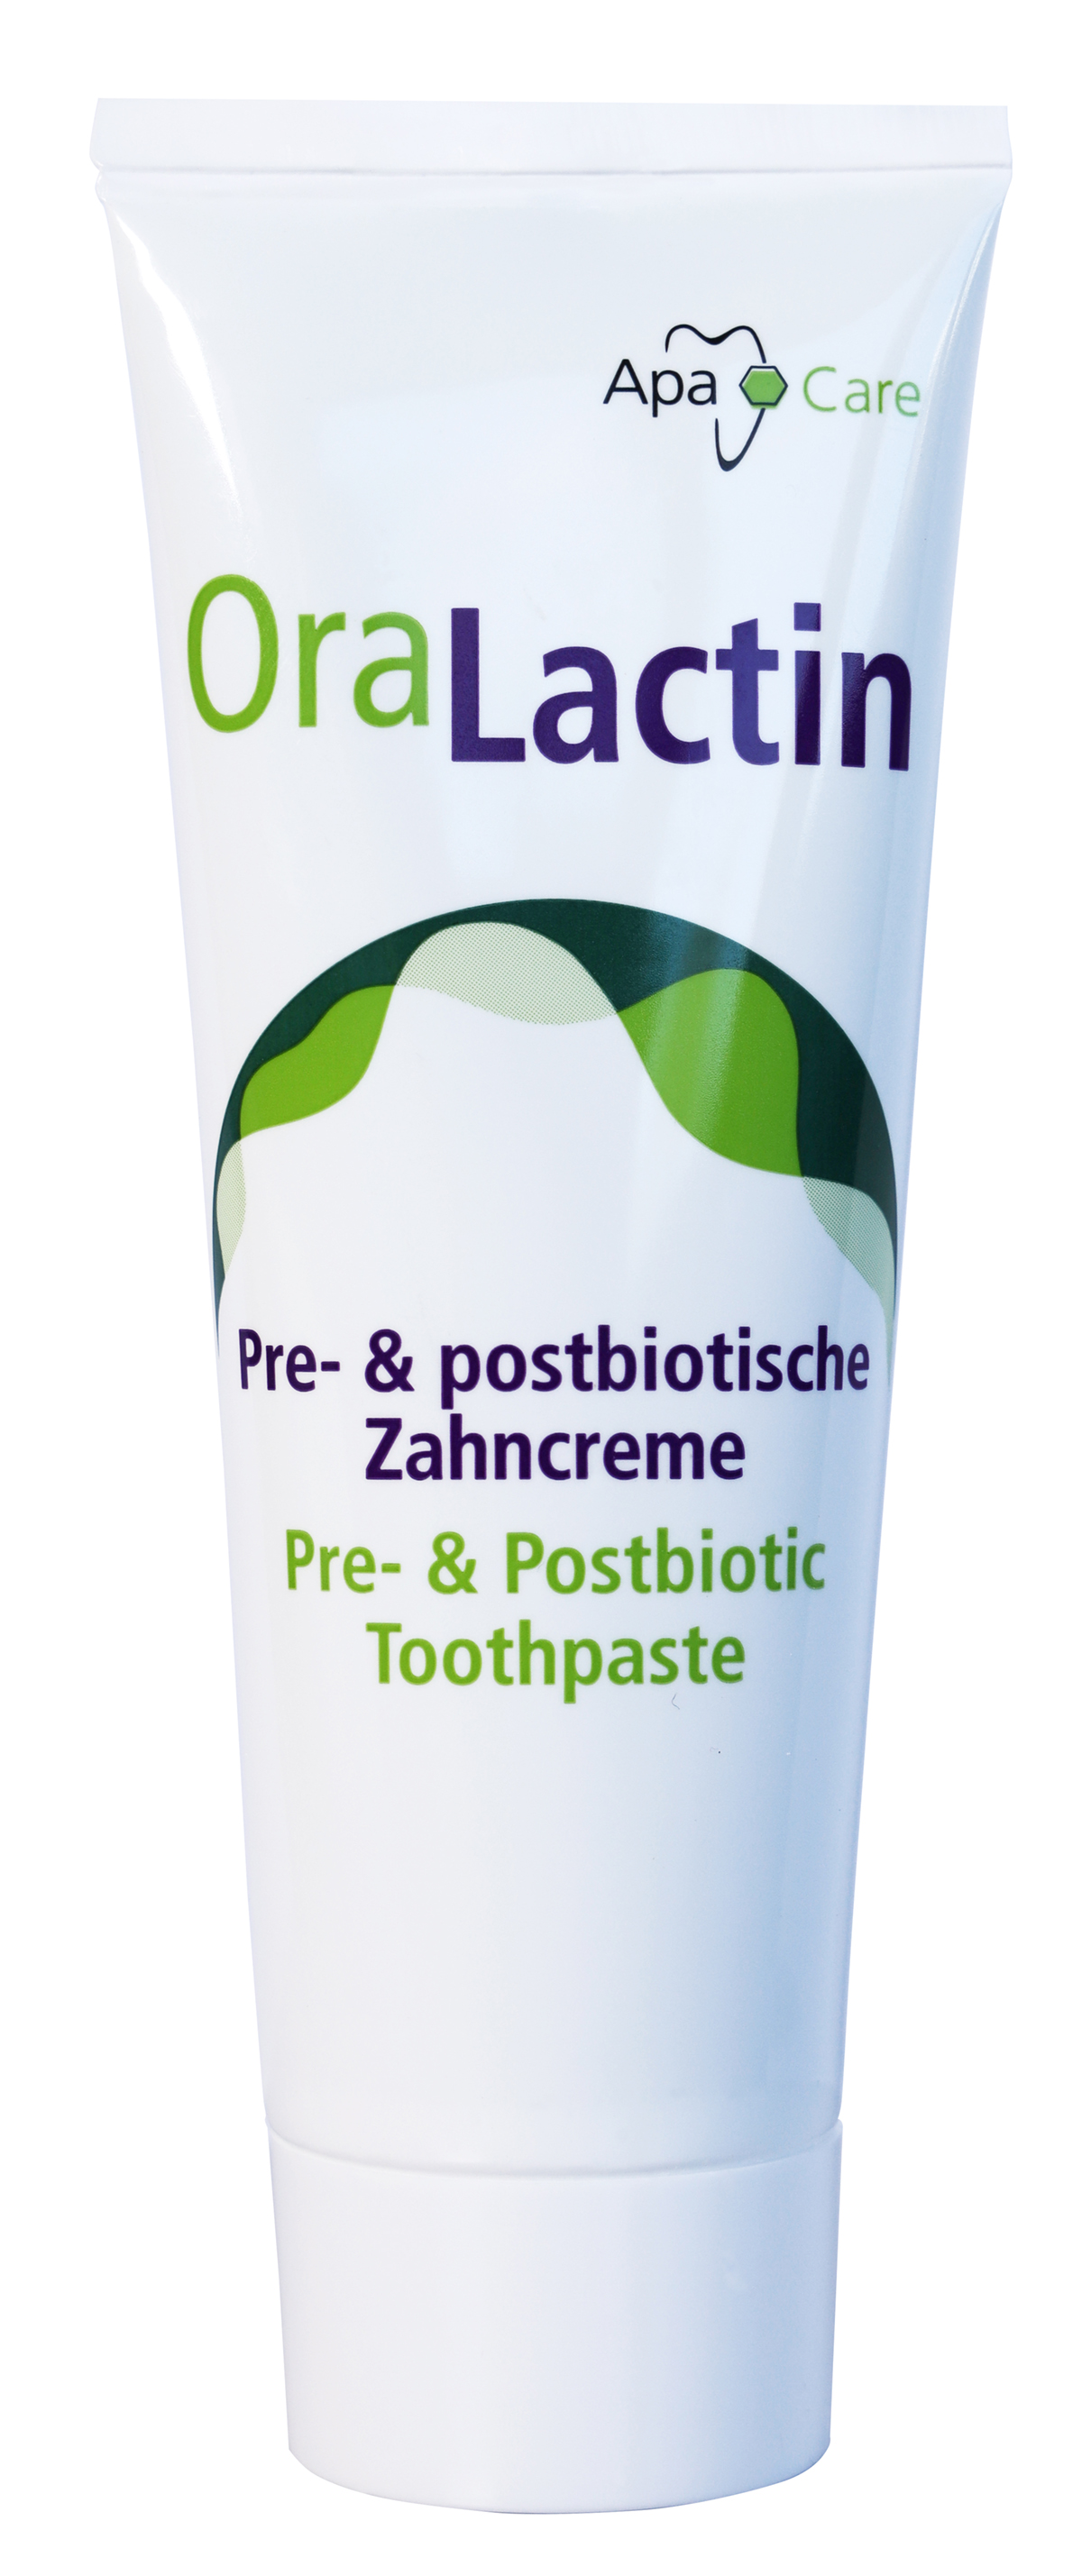 ApaCare Zahnpflege Produkte mit flüssigem Zahnschmelz Hydroxylapatit und  Fluorid.